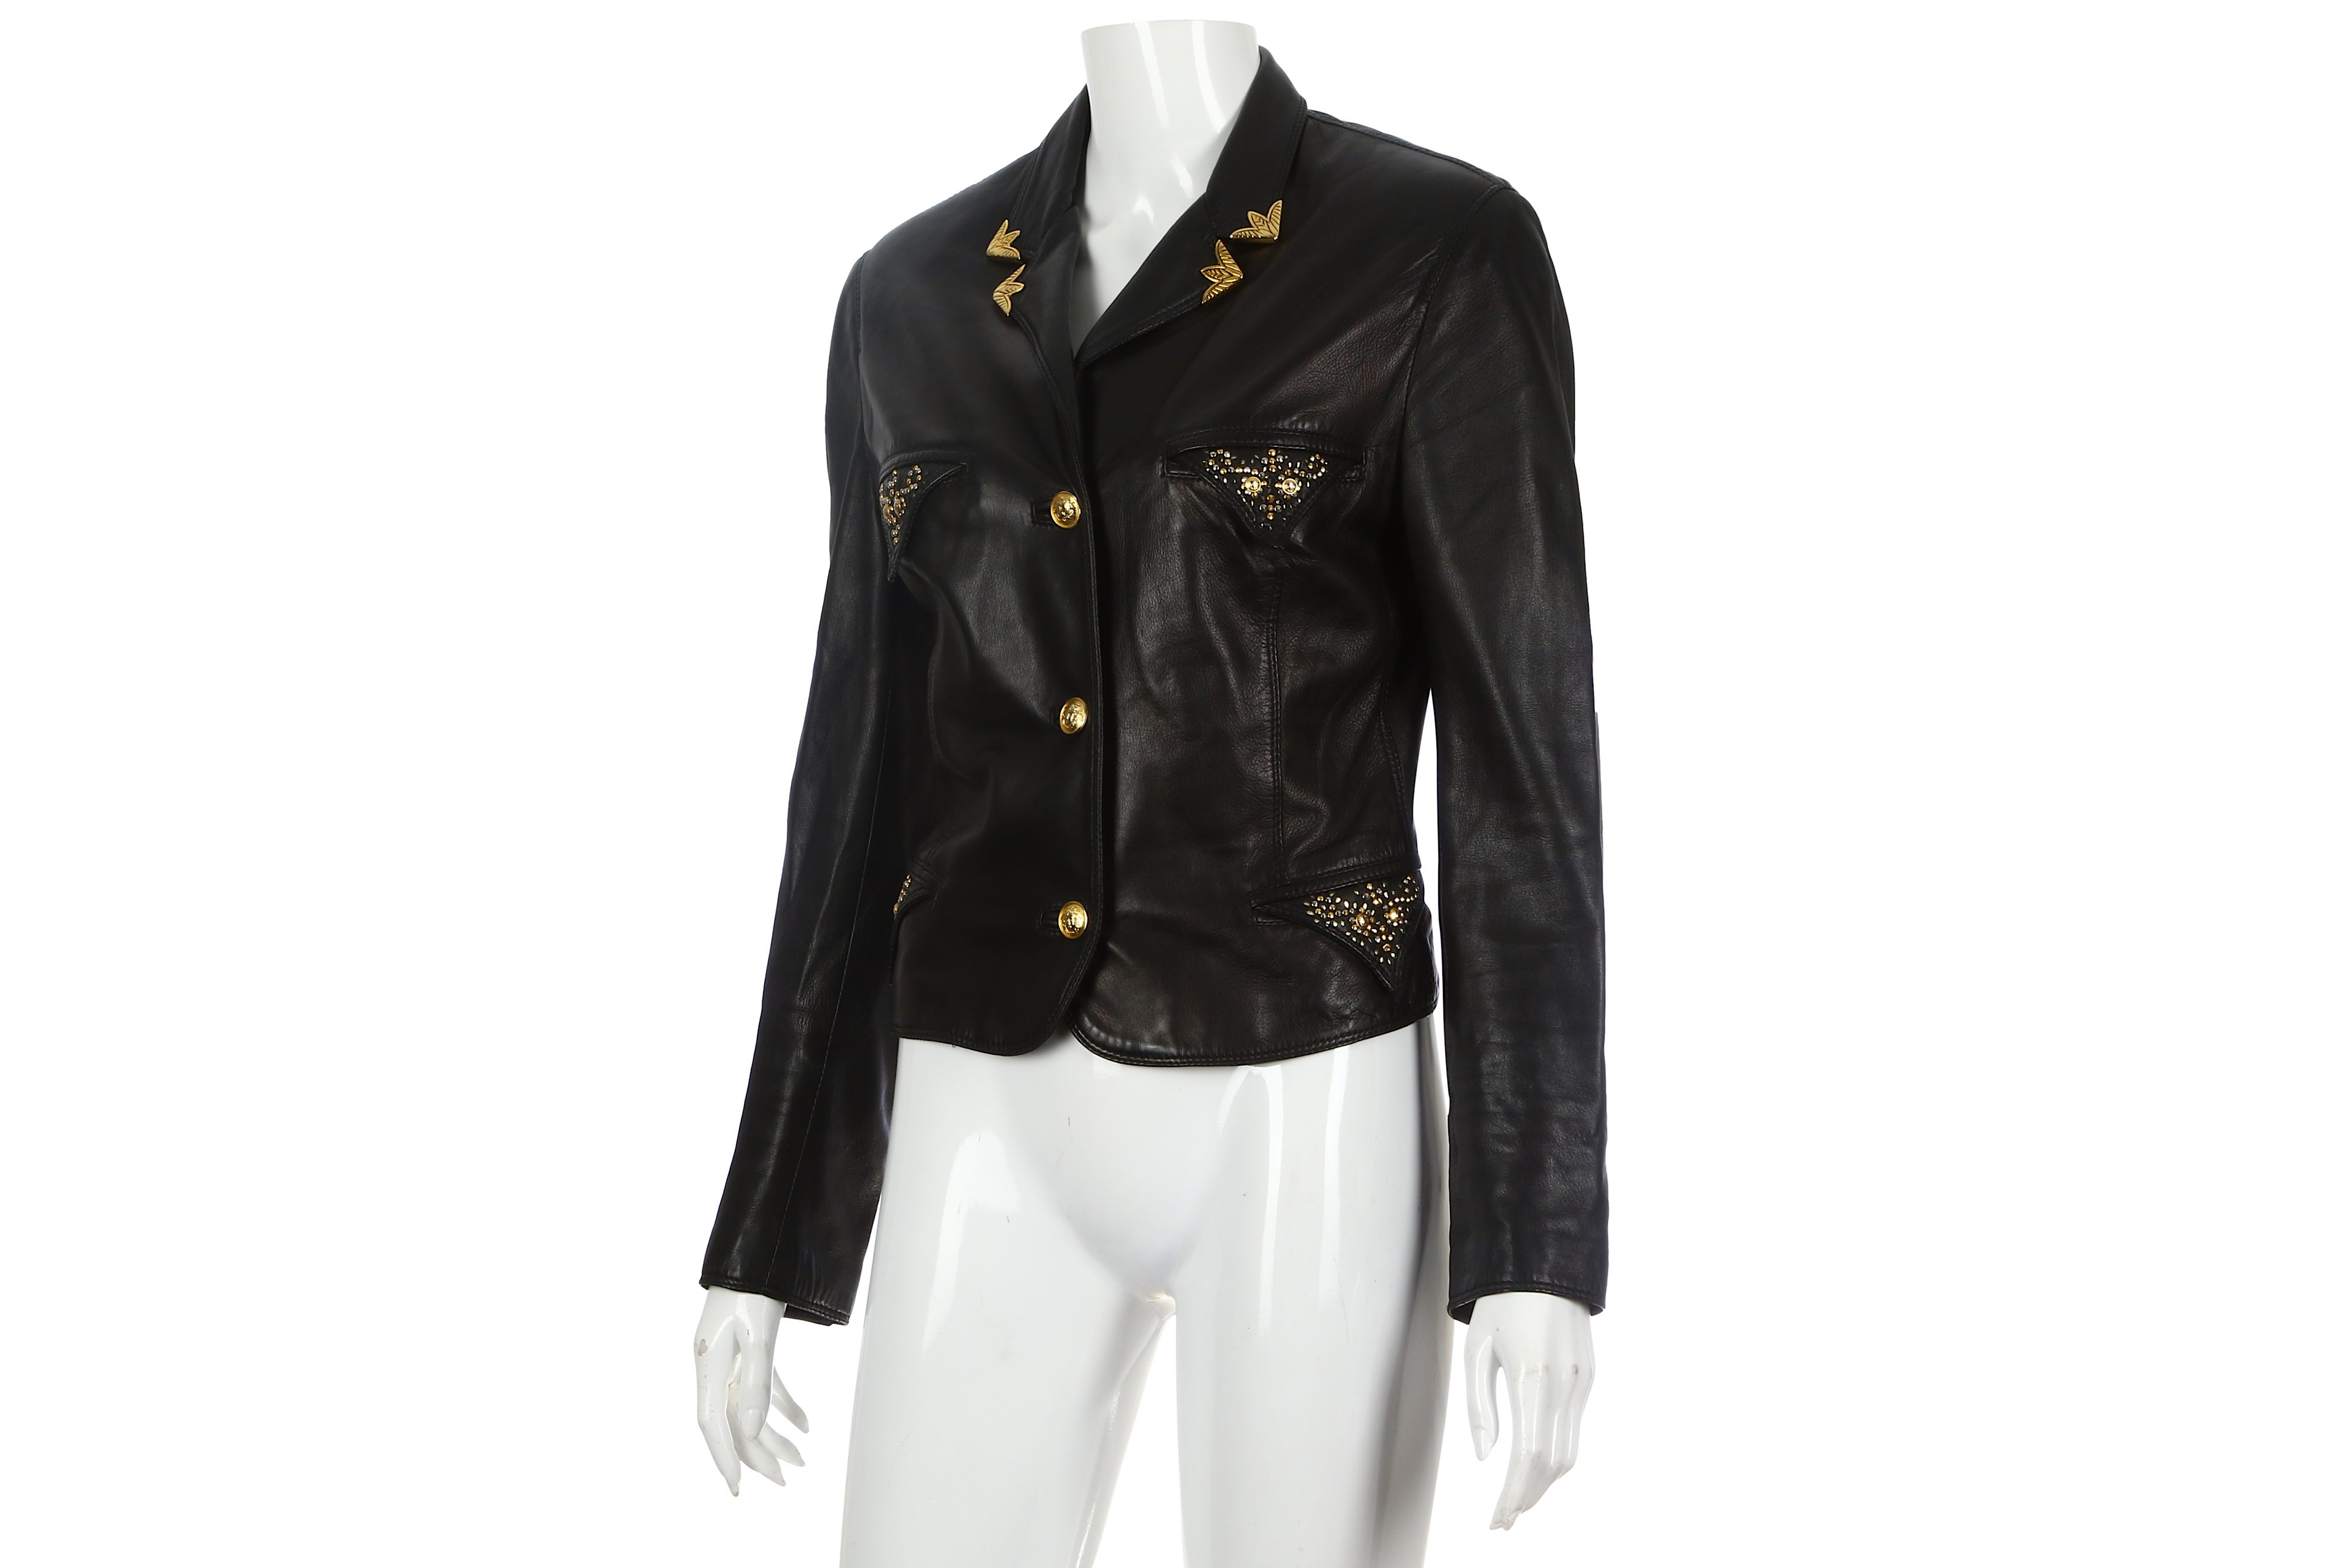 Gianni Versace Black Leather Jacket - Image 2 of 7